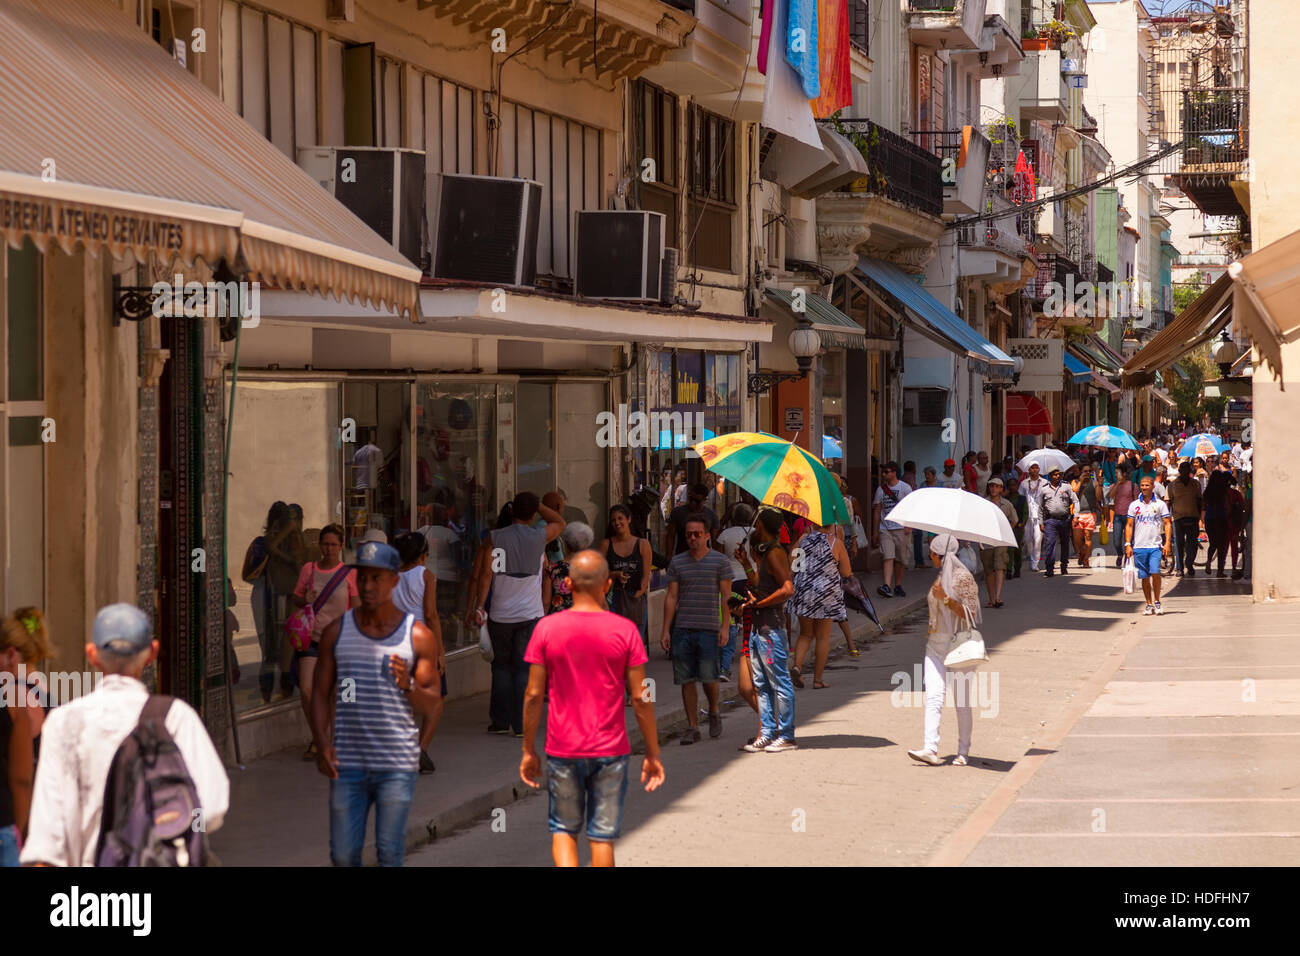 Eine belebte Straße voller Kubaner (Einheimischen) in Zentral-Havanna, Kuba. Stockfoto